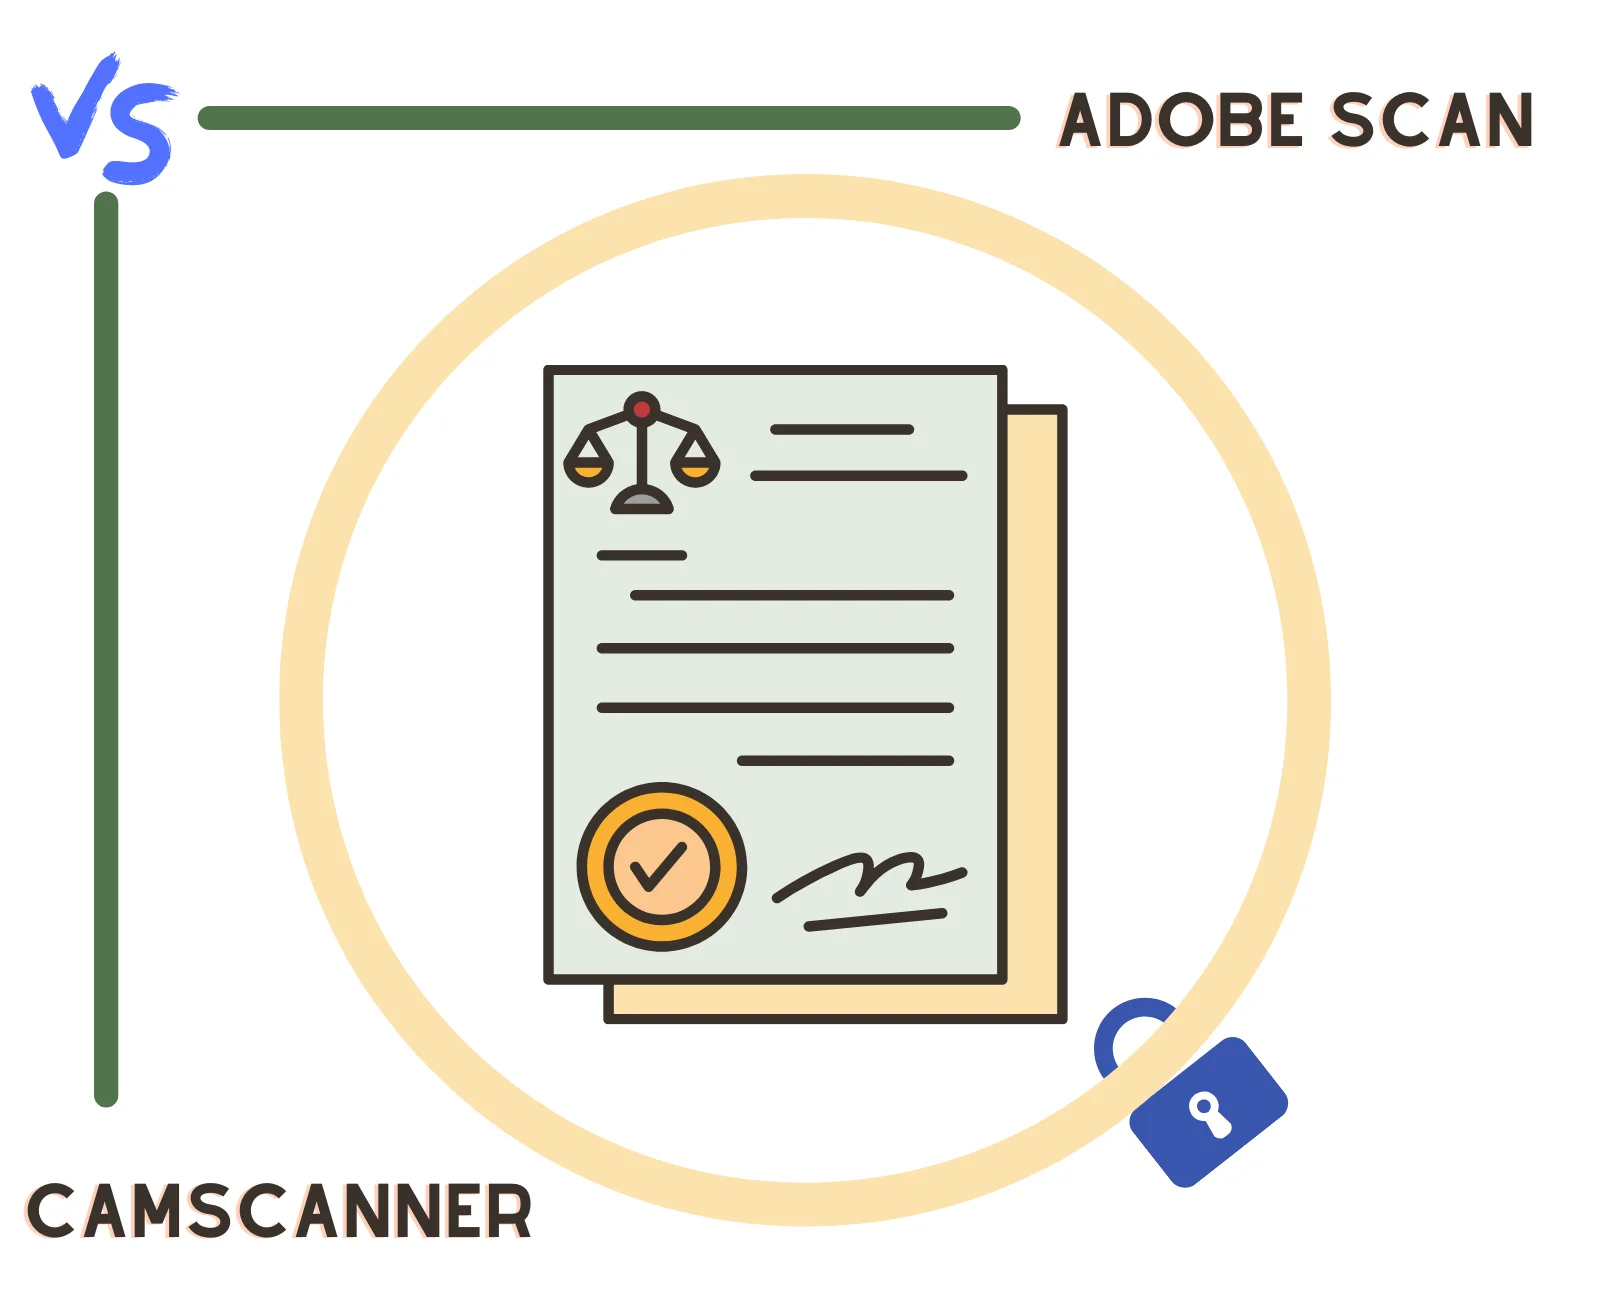 Adobe Scan vs. CamScanner